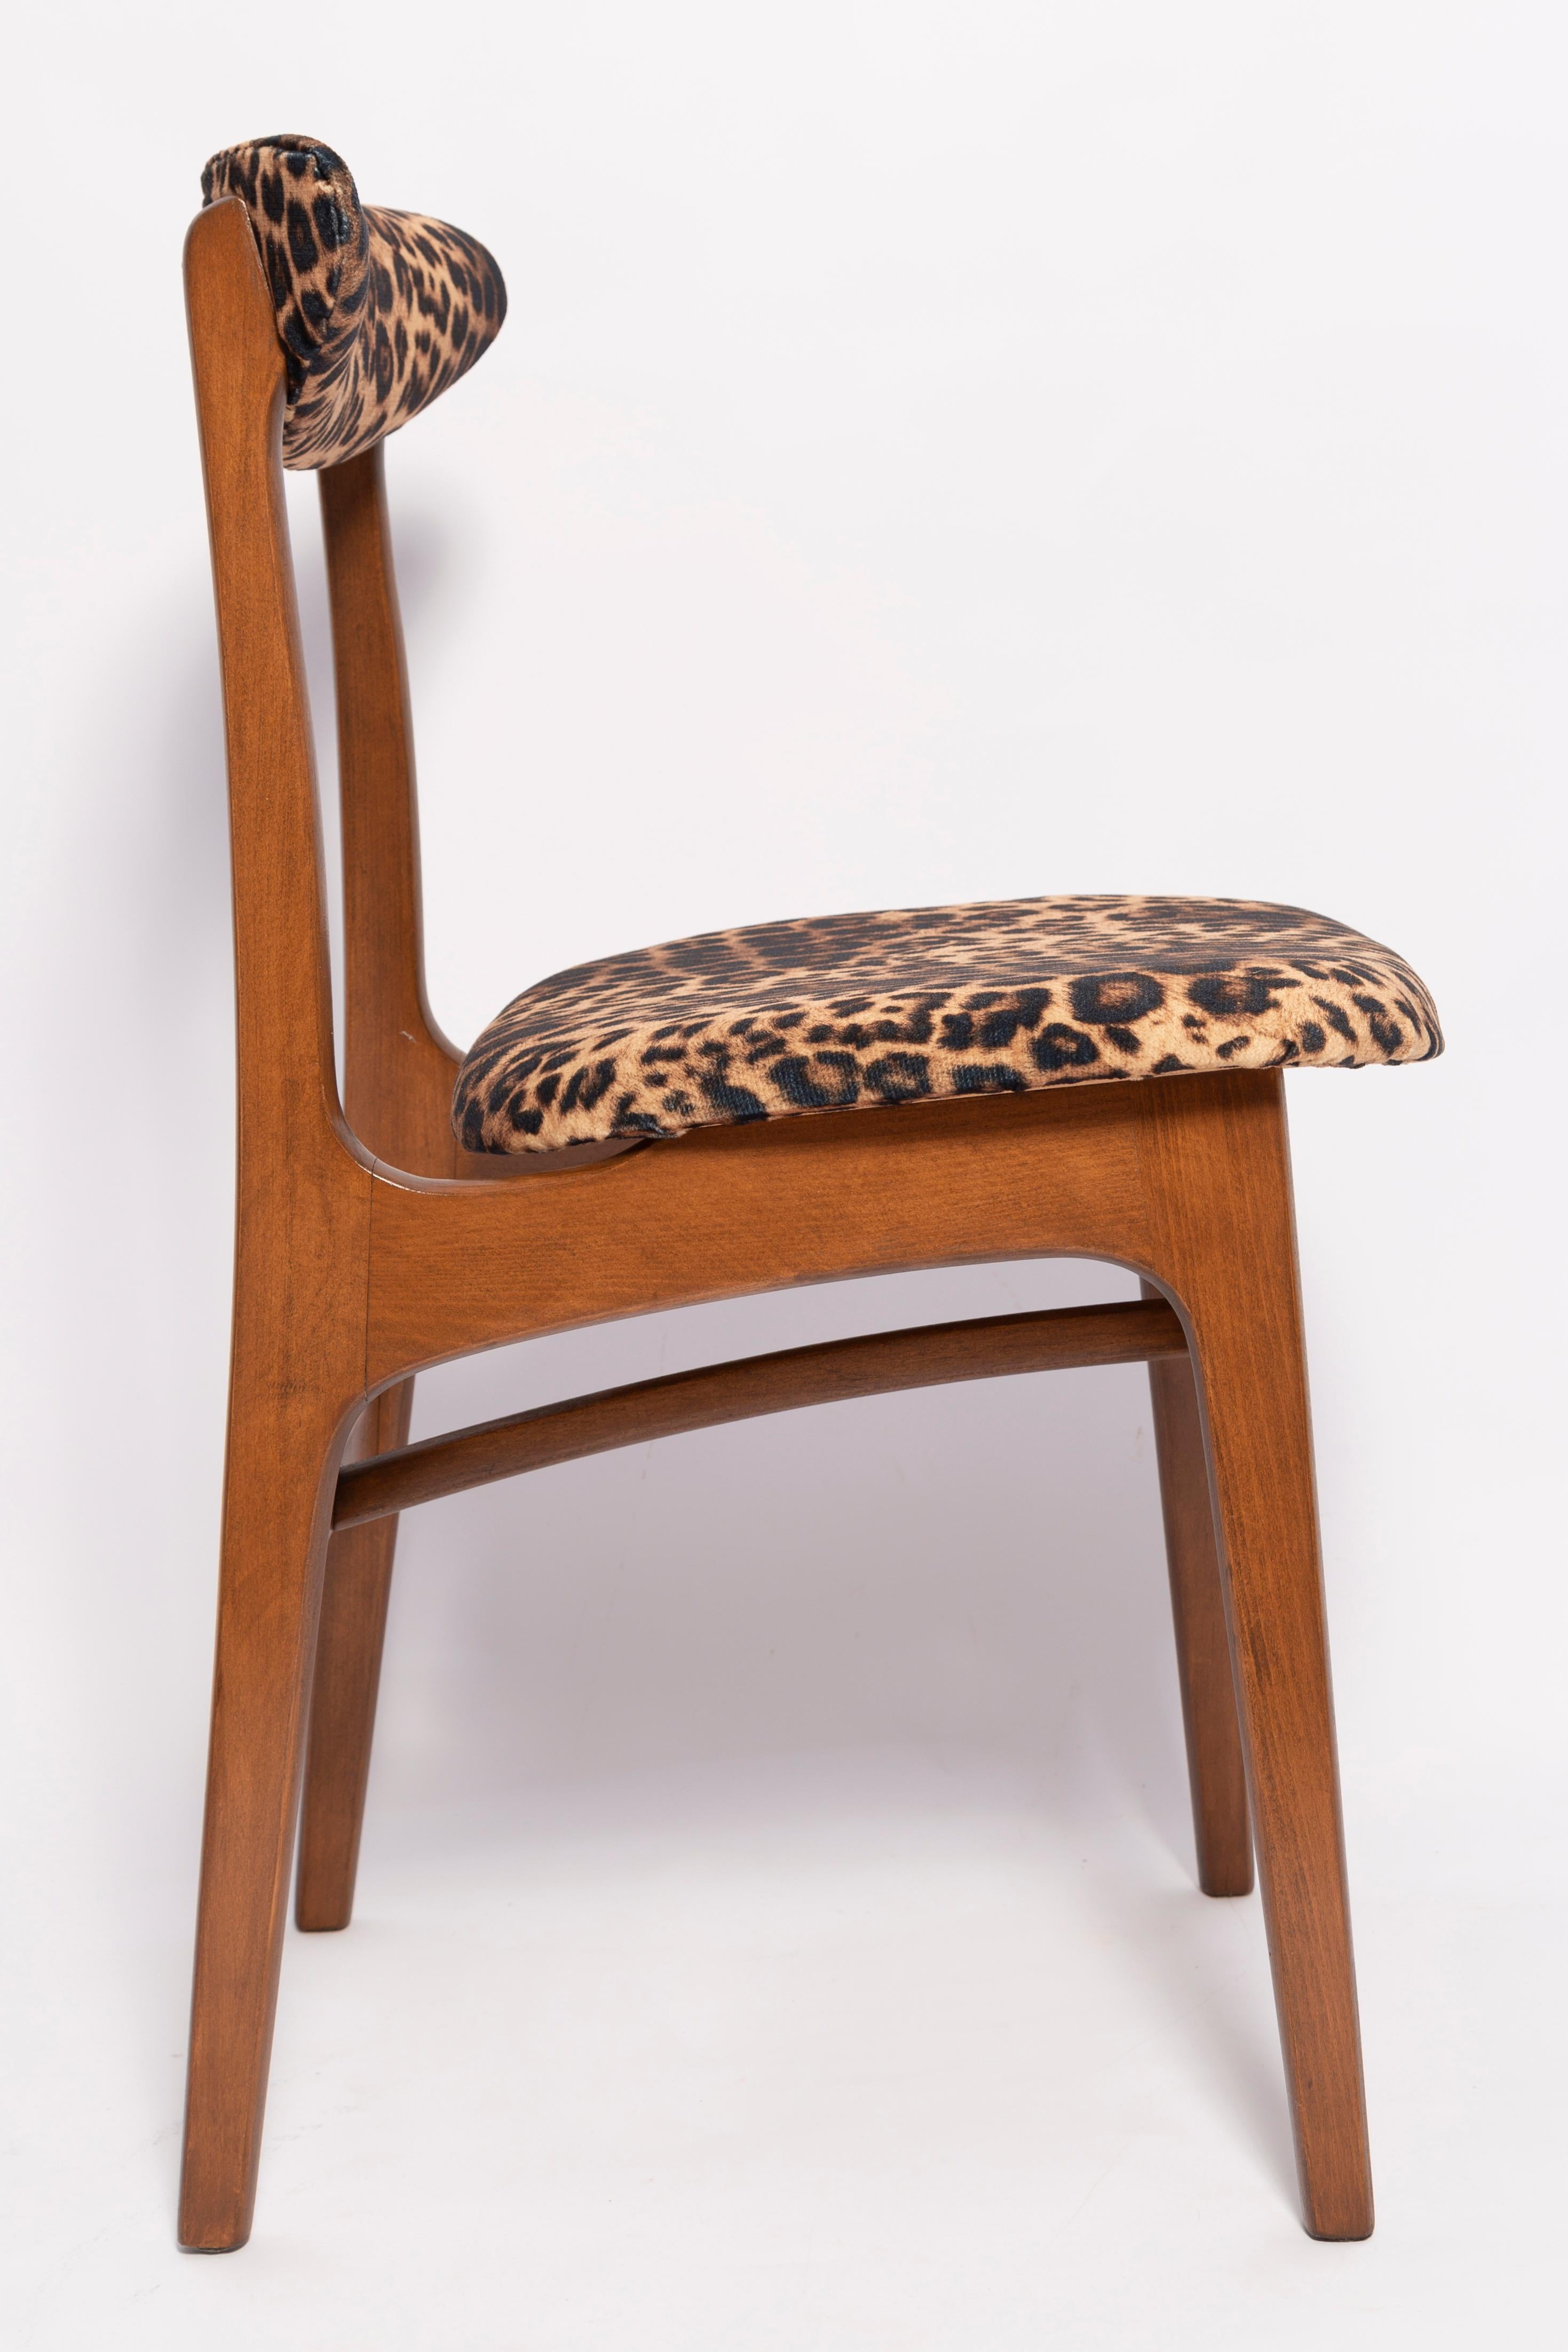 Mid-Century Modern Mid Century Leopard Velvet Chair, Walnut Wood, Rajmund Halas, Poland, 1960s For Sale